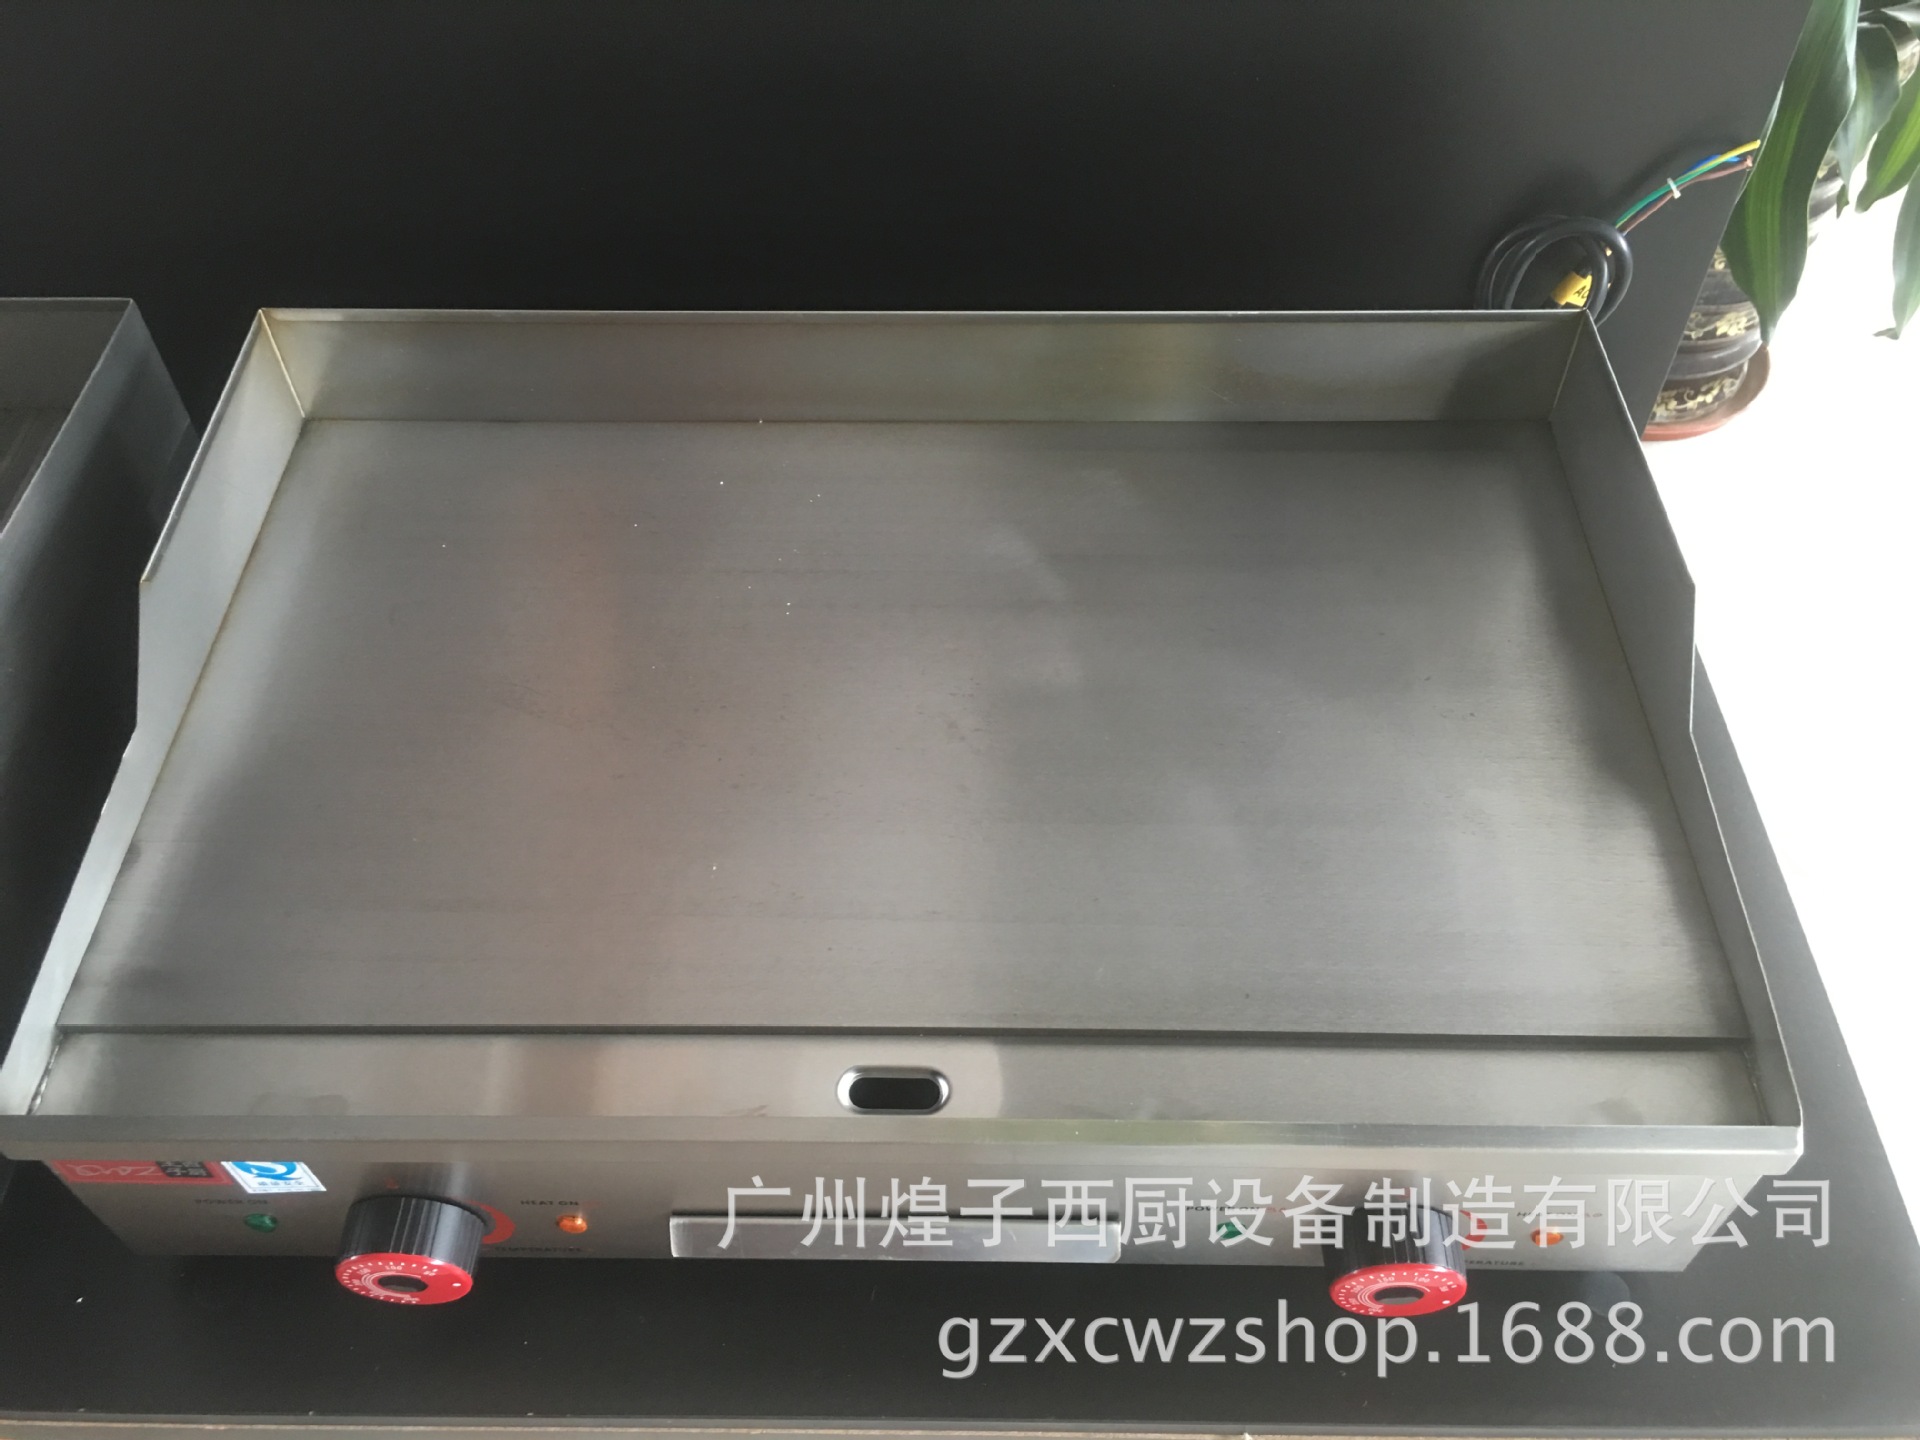 王子西厨EG-820电热平扒炉 手抓饼炒饭机 铁板鱿鱼 商用铁板烧机